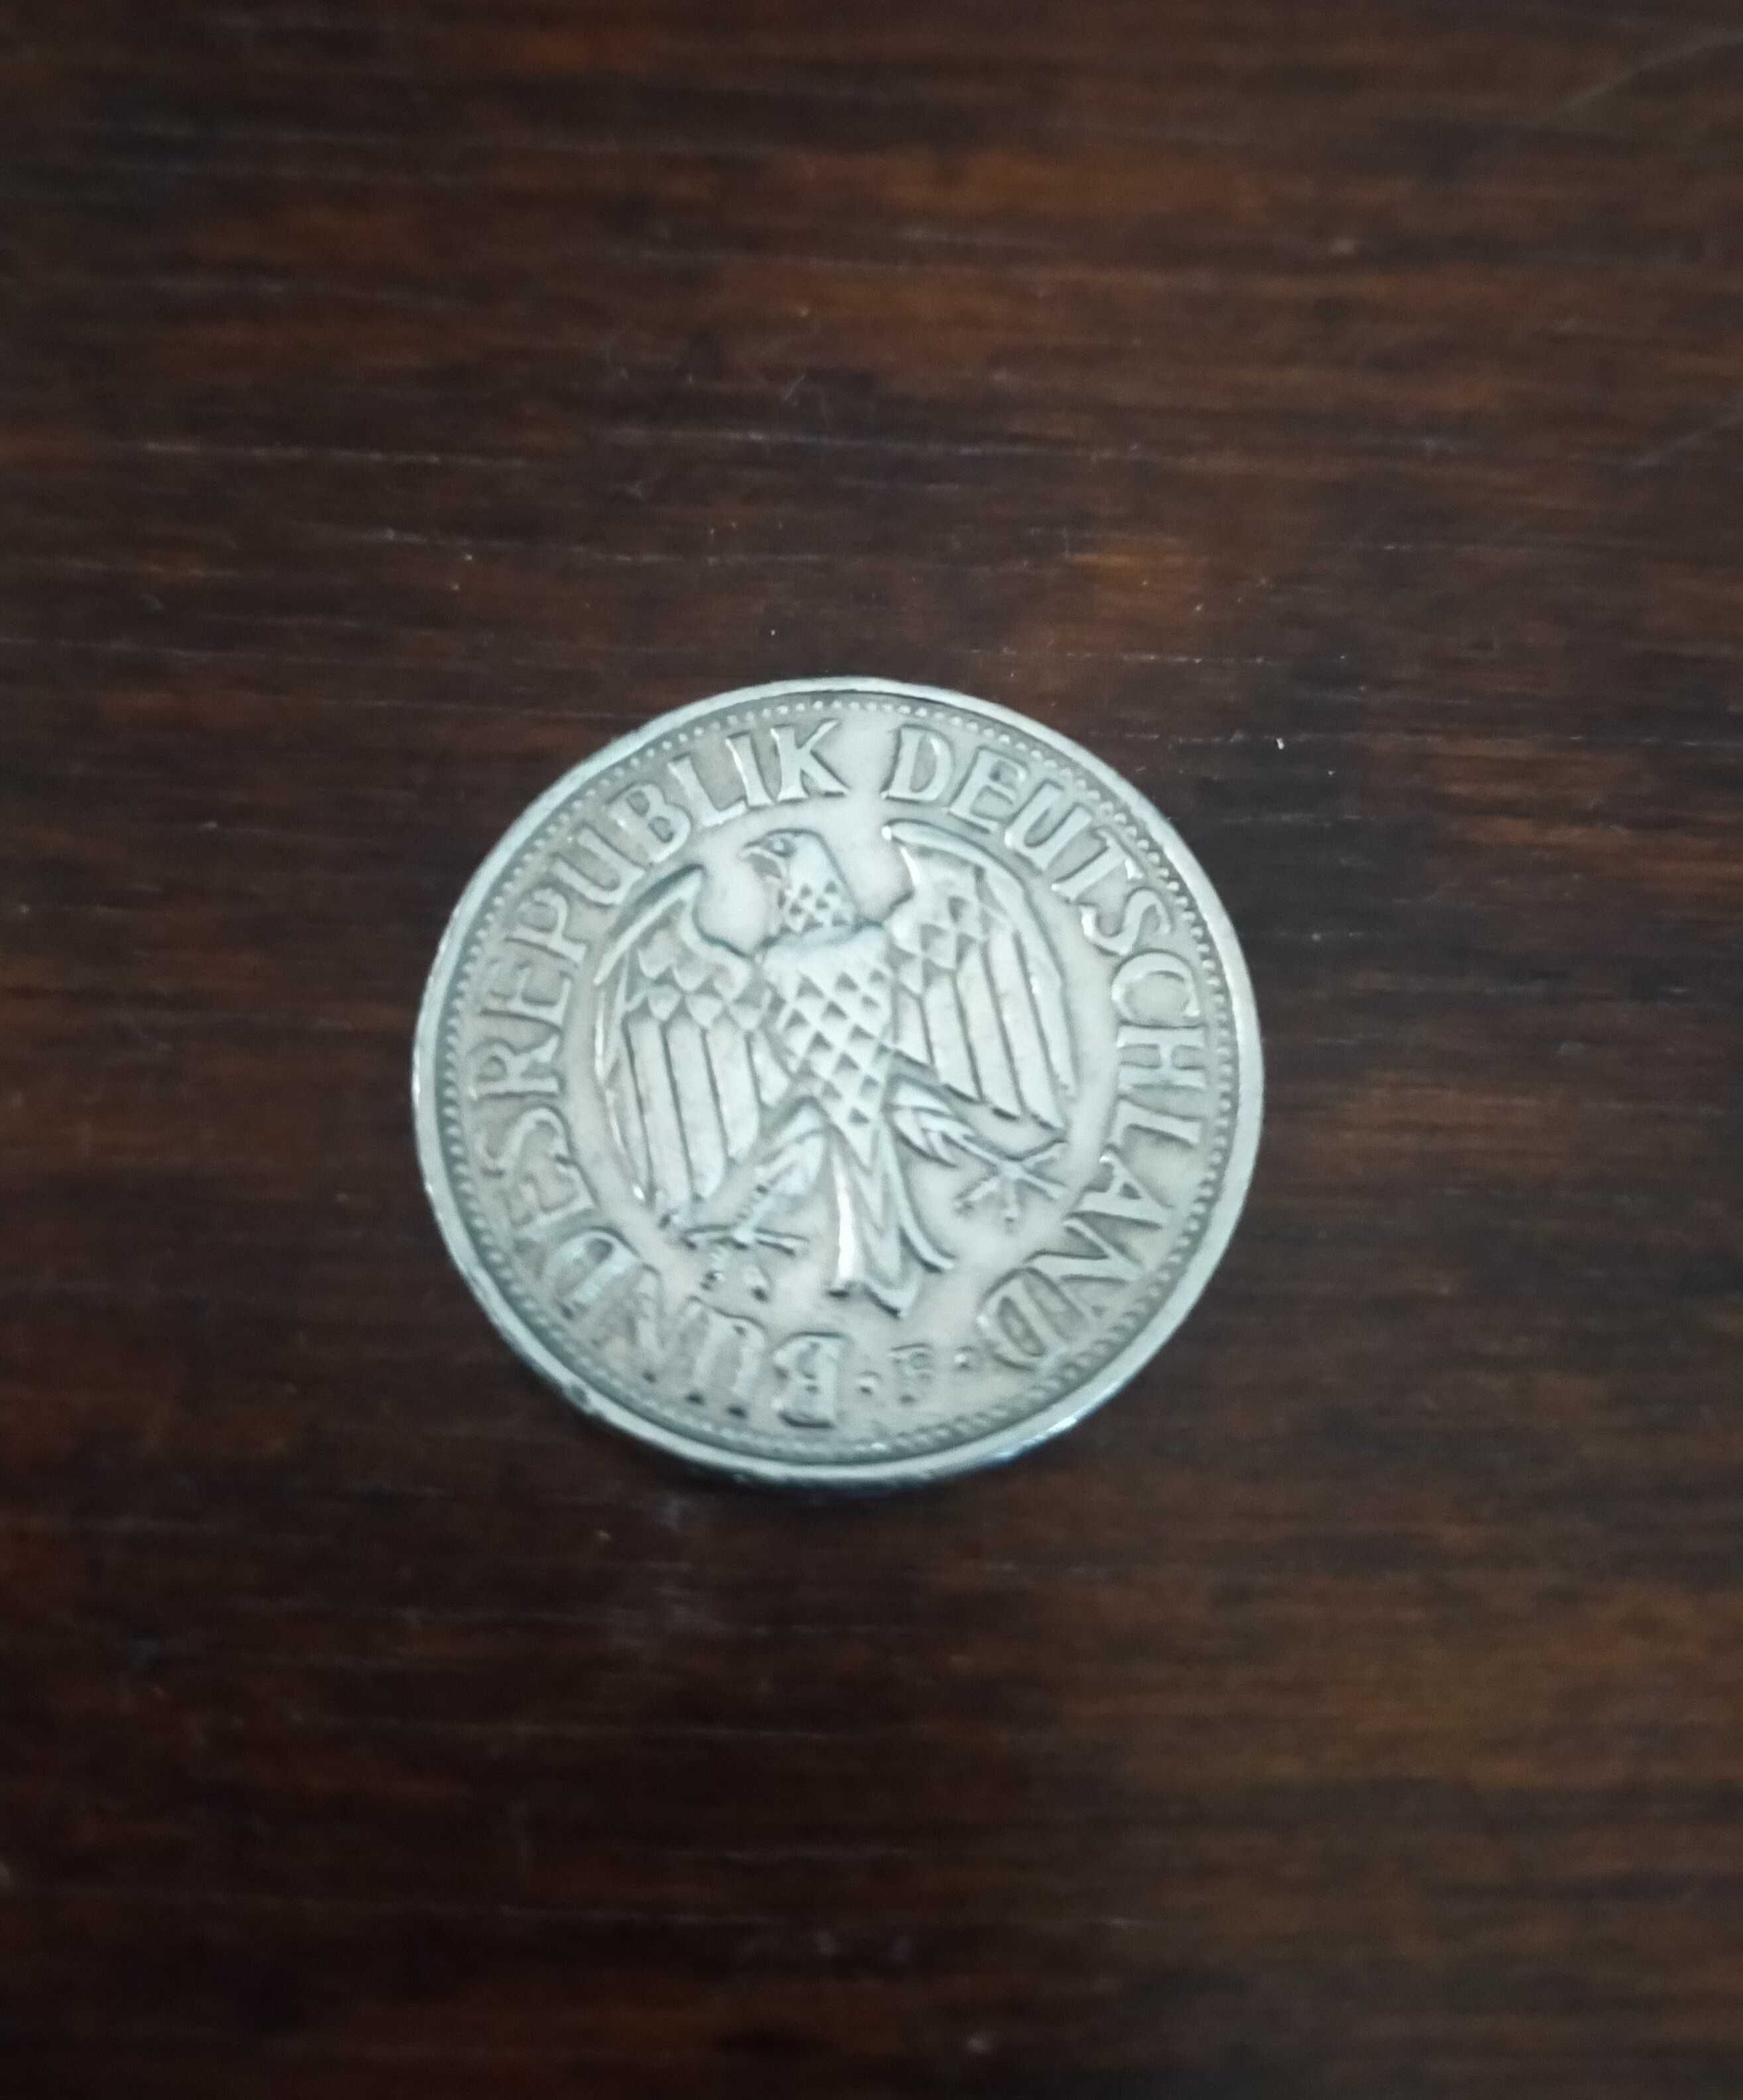 1 marka niemiecka z 1959 r.